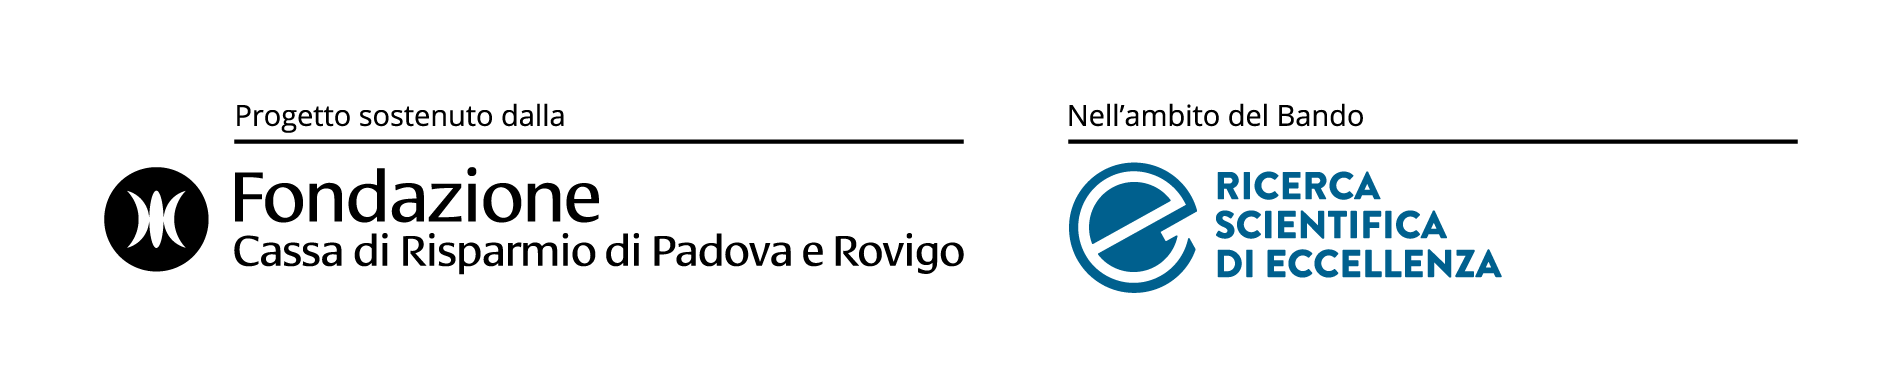 Logo Bando Ricerca Scientifica di Eccellenza della Fondazione Cassa di Risparmio di Padova e Rovigo